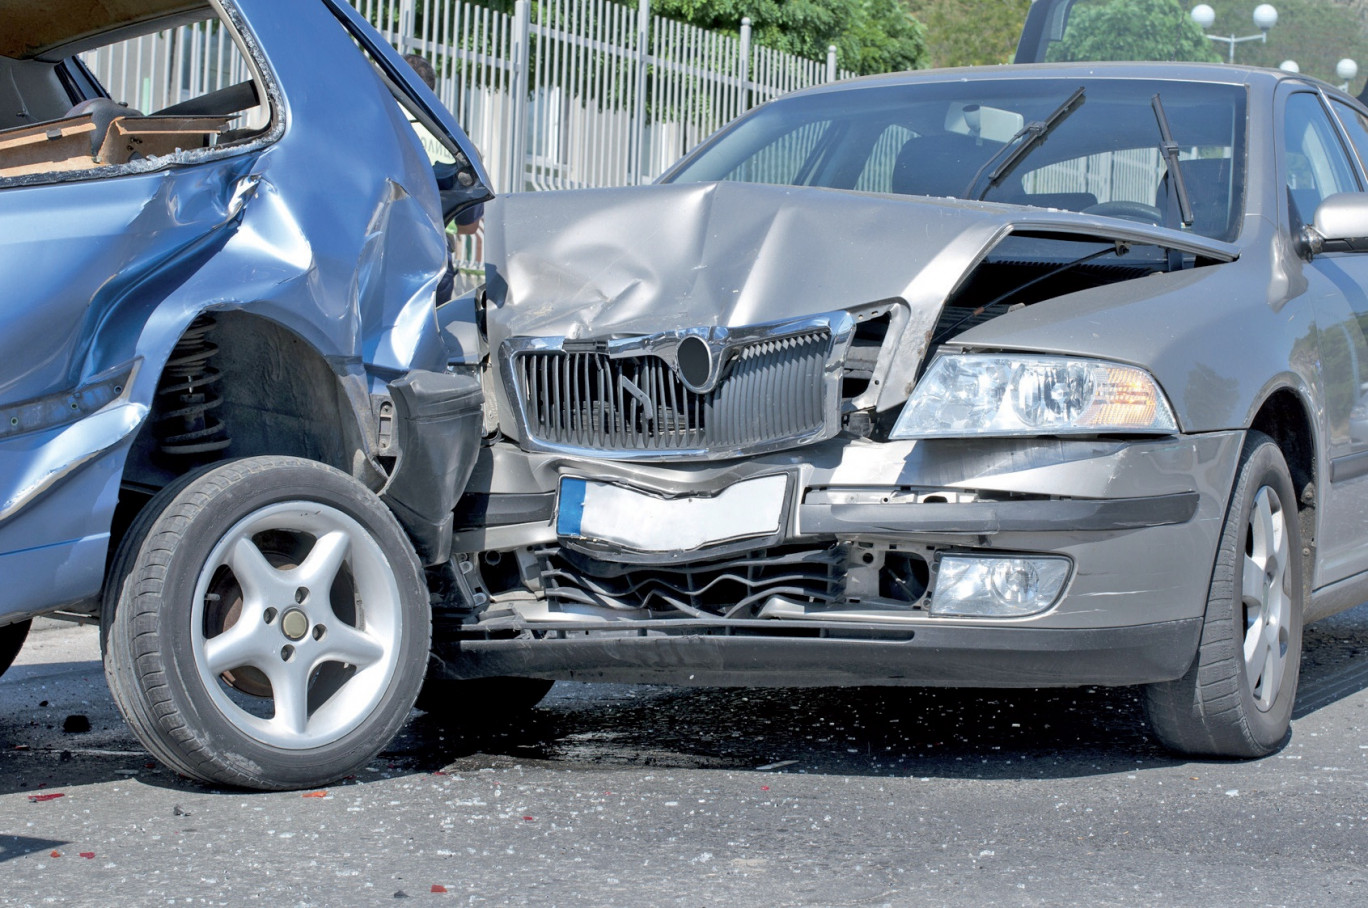 La région se situe en 4ème position en ce qui concerne les accidents de voiture.